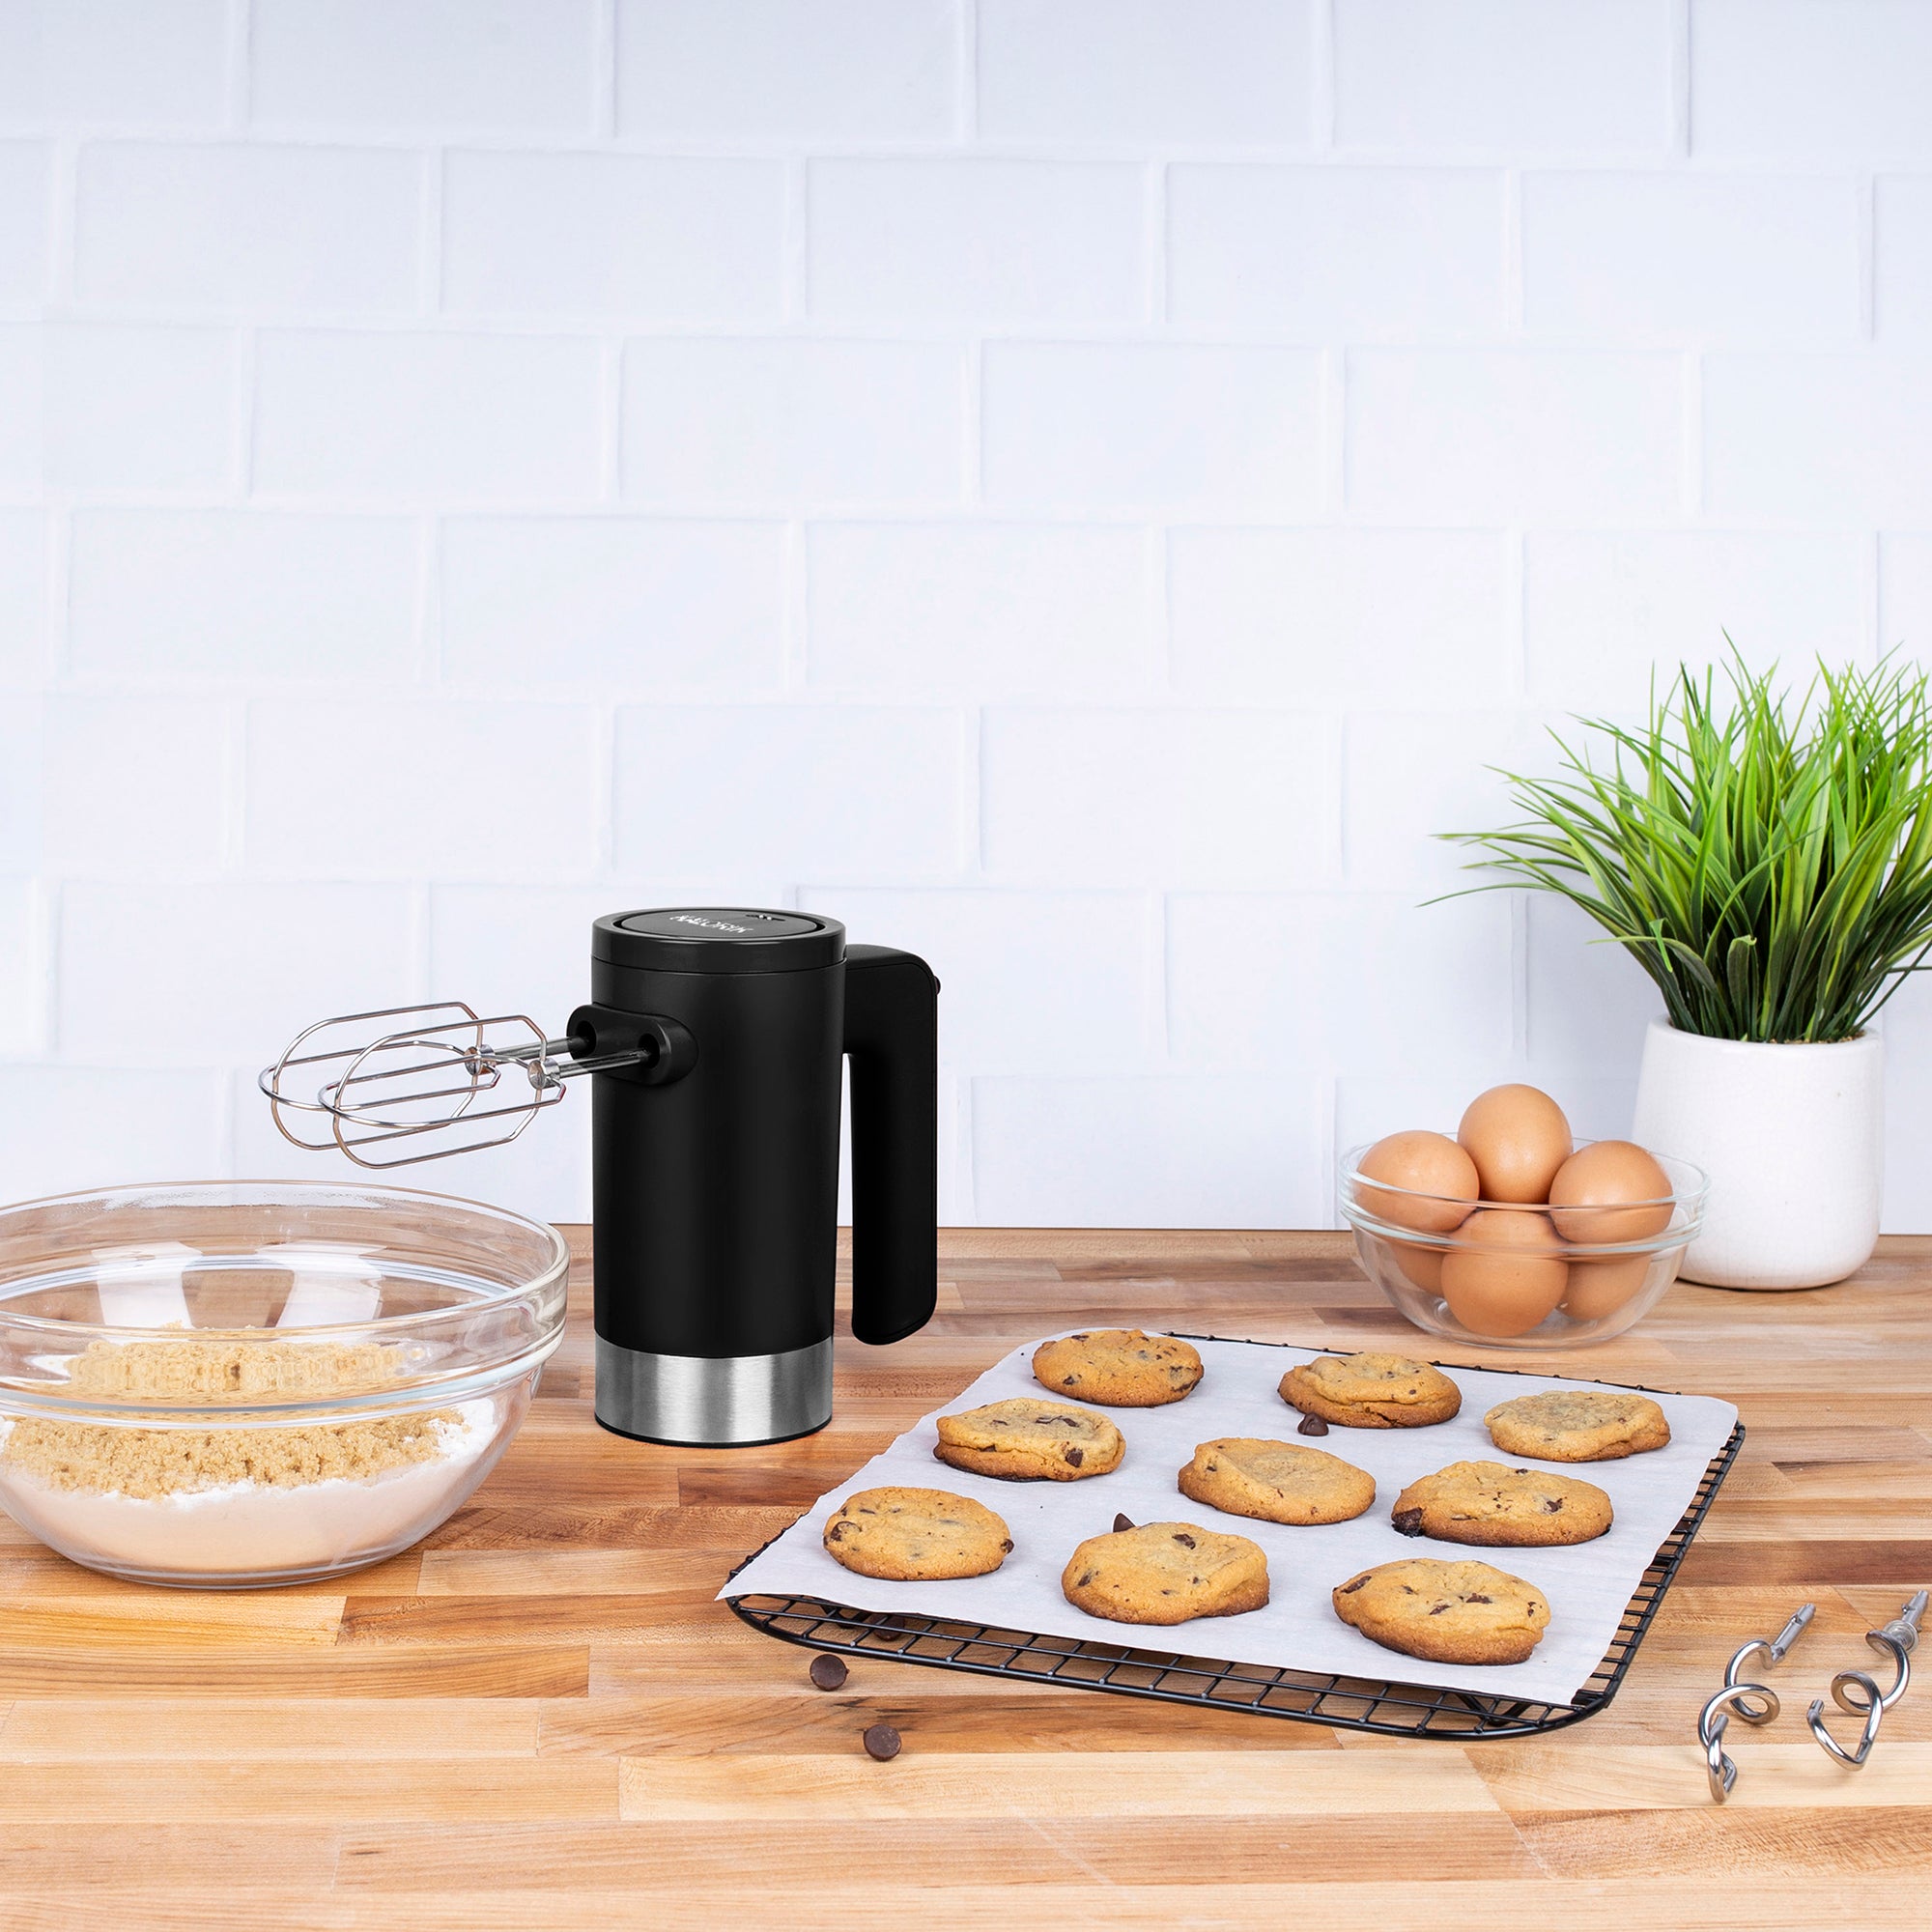 Kalorik Electric Cordless Hand Mixer with Chocolate Chip Cookies